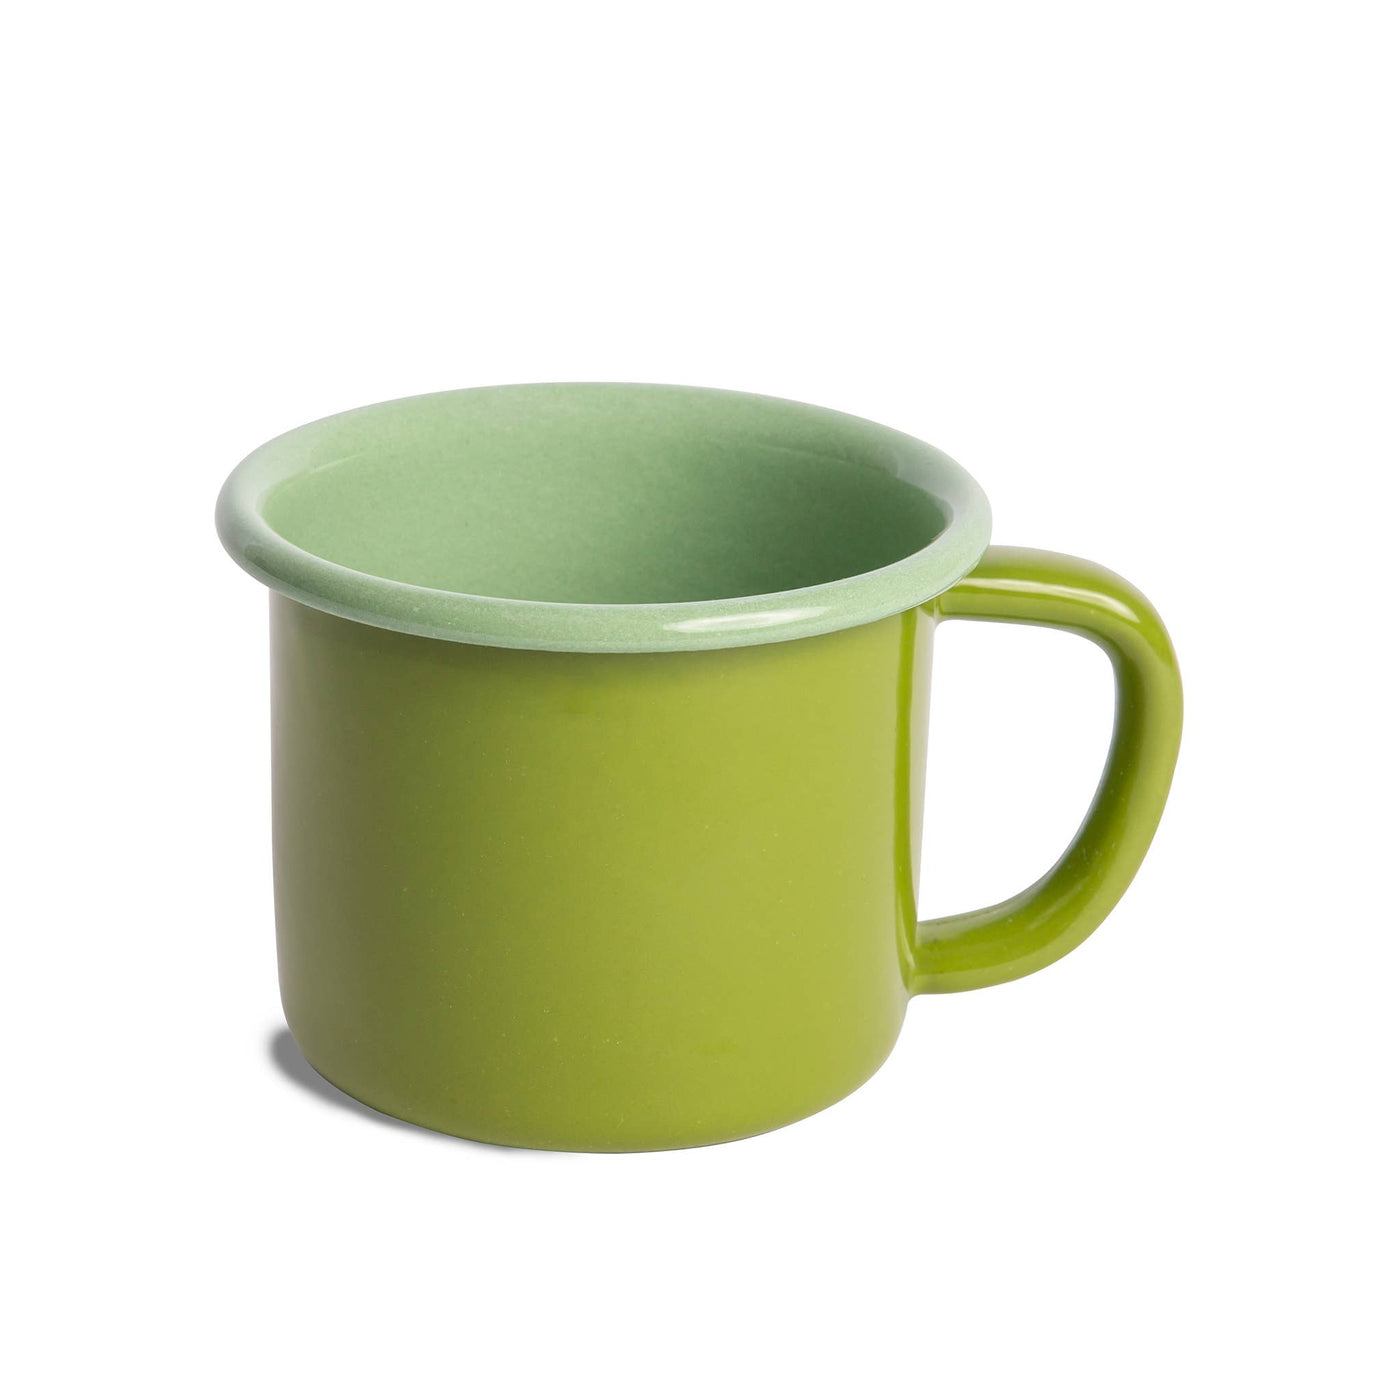 Green Enamelware Mug